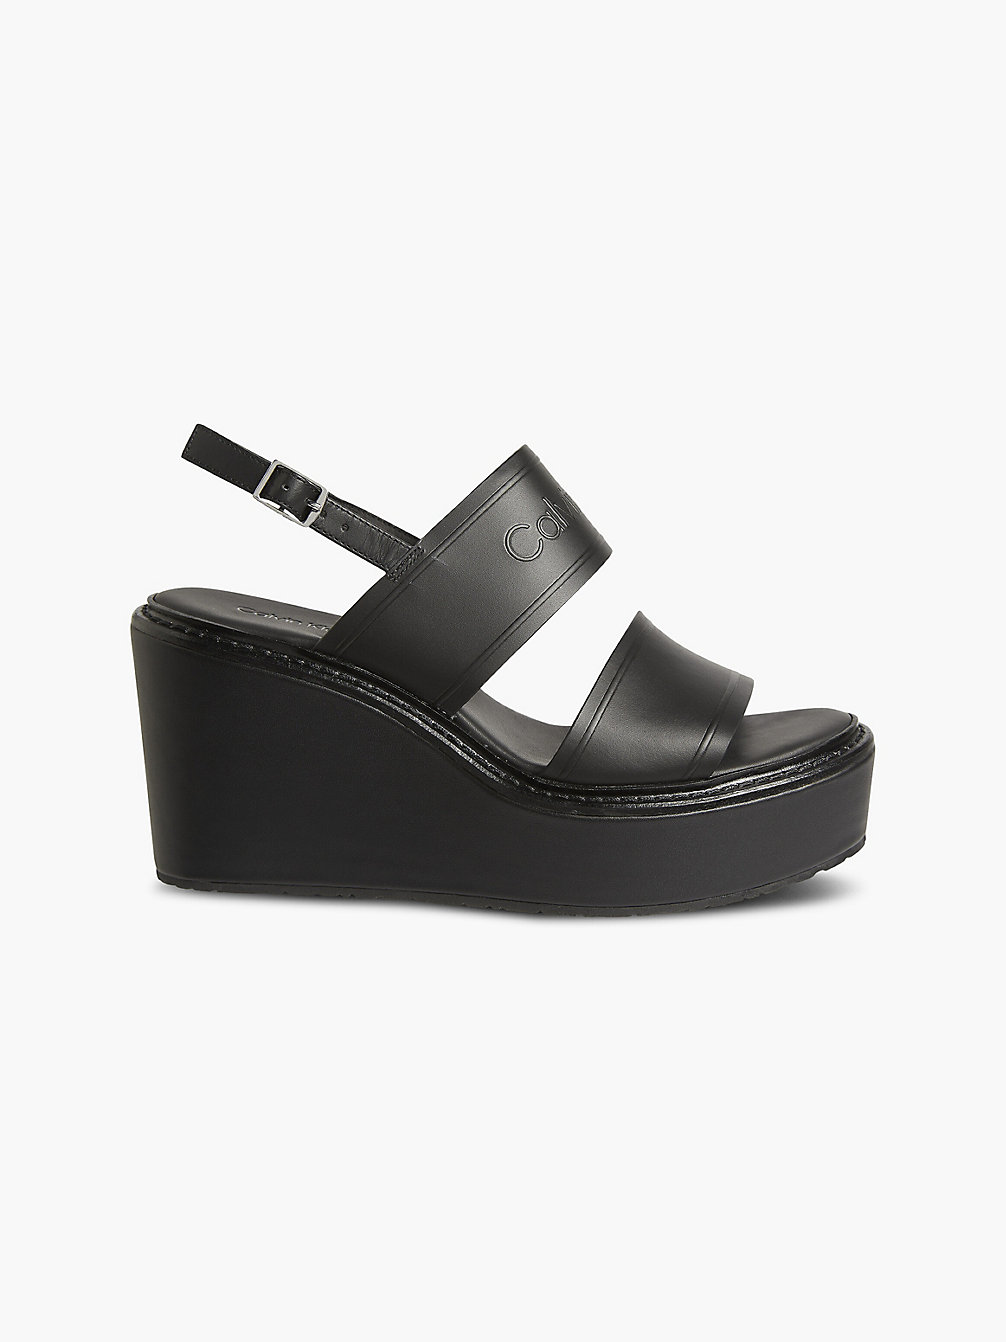 CK BLACK Leather Platform Wedge Sandals undefined women Calvin Klein